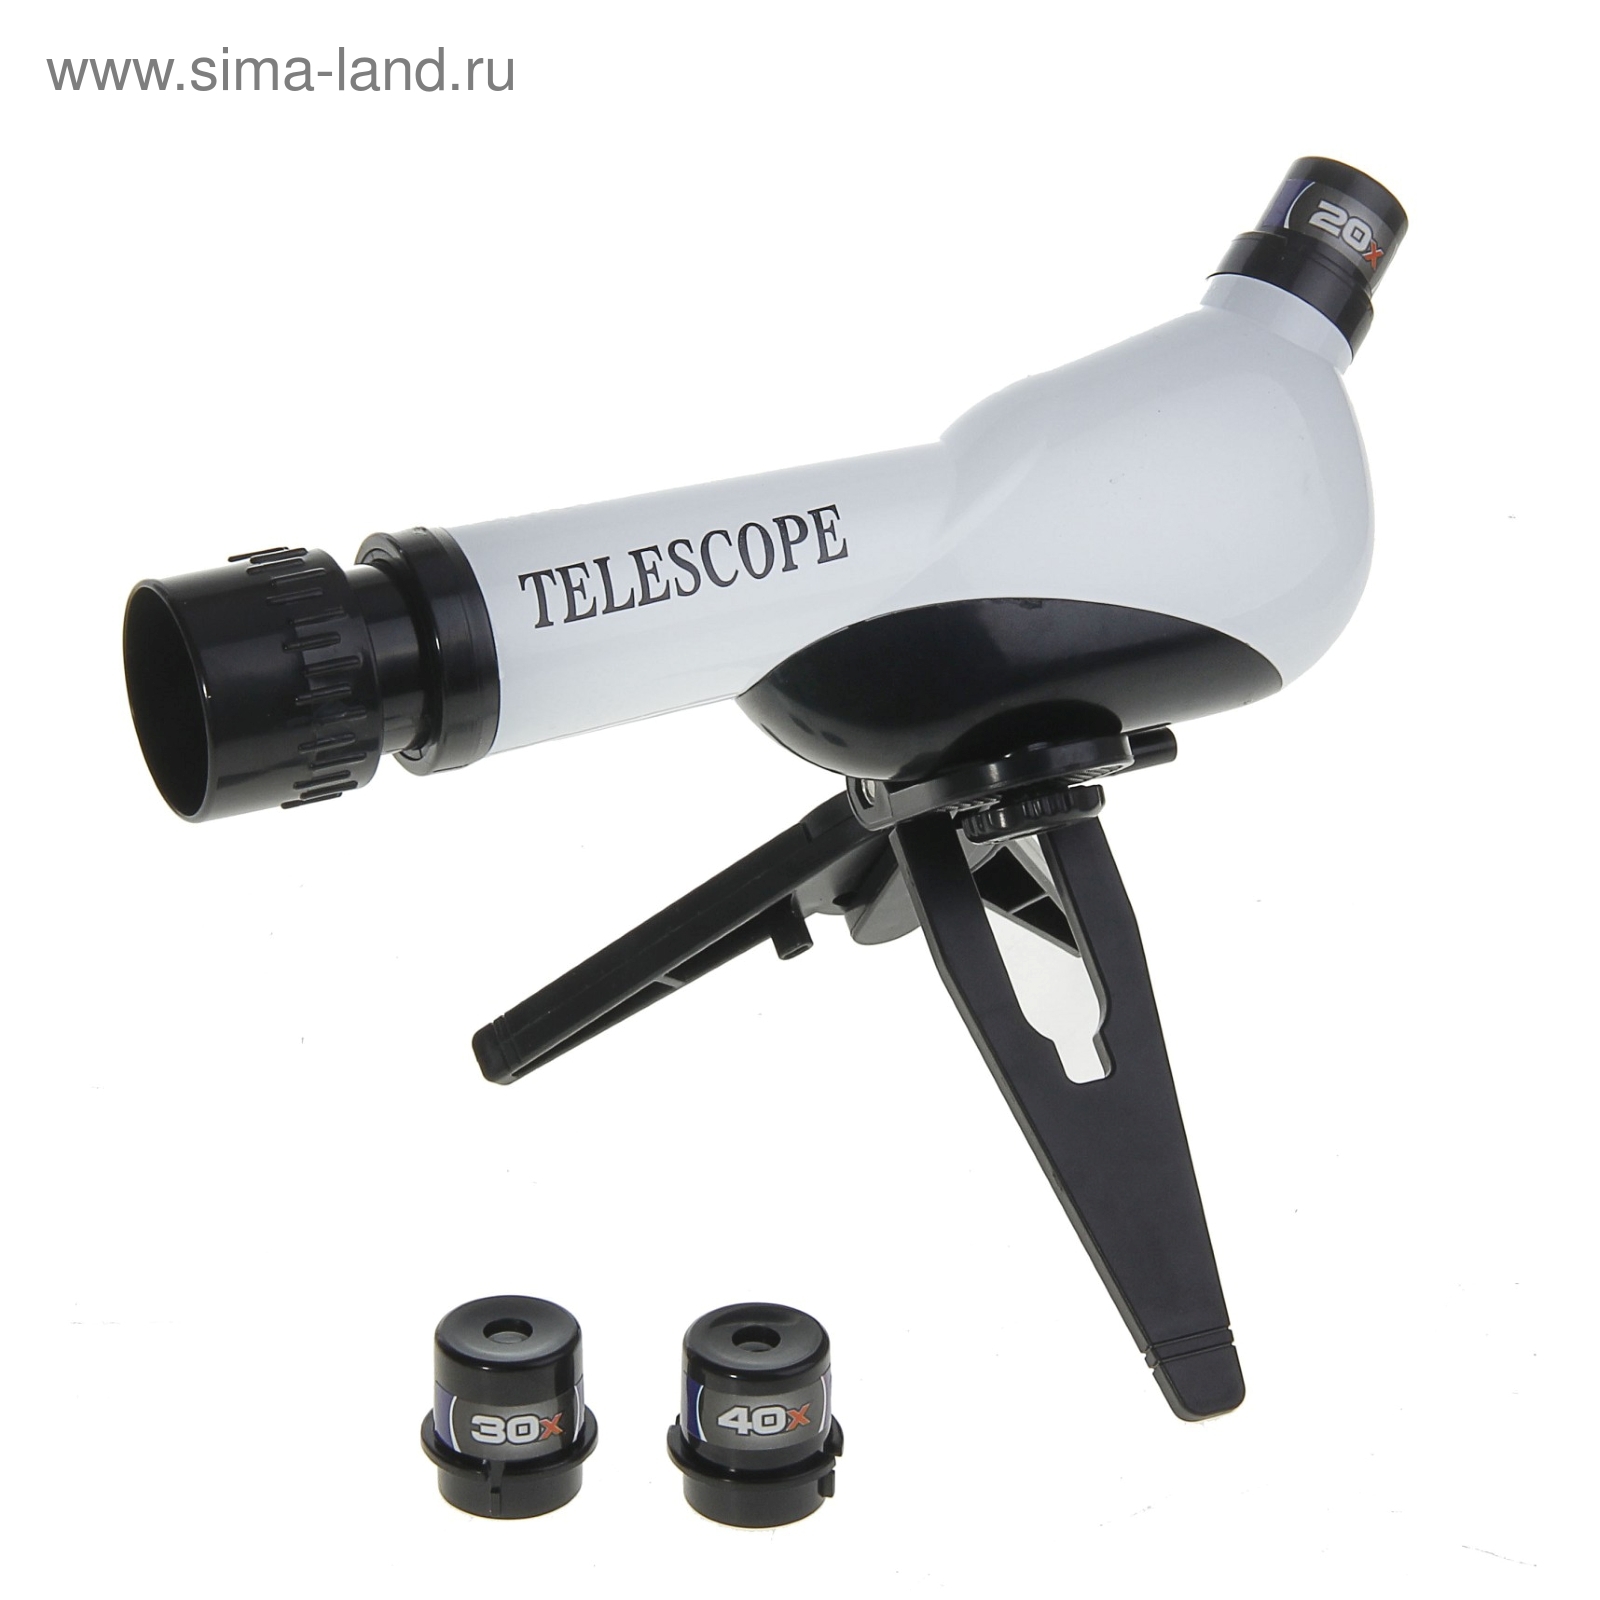 Телескоп настольный сувенирный "Оптика" сменные линзы 20х-30х-40х